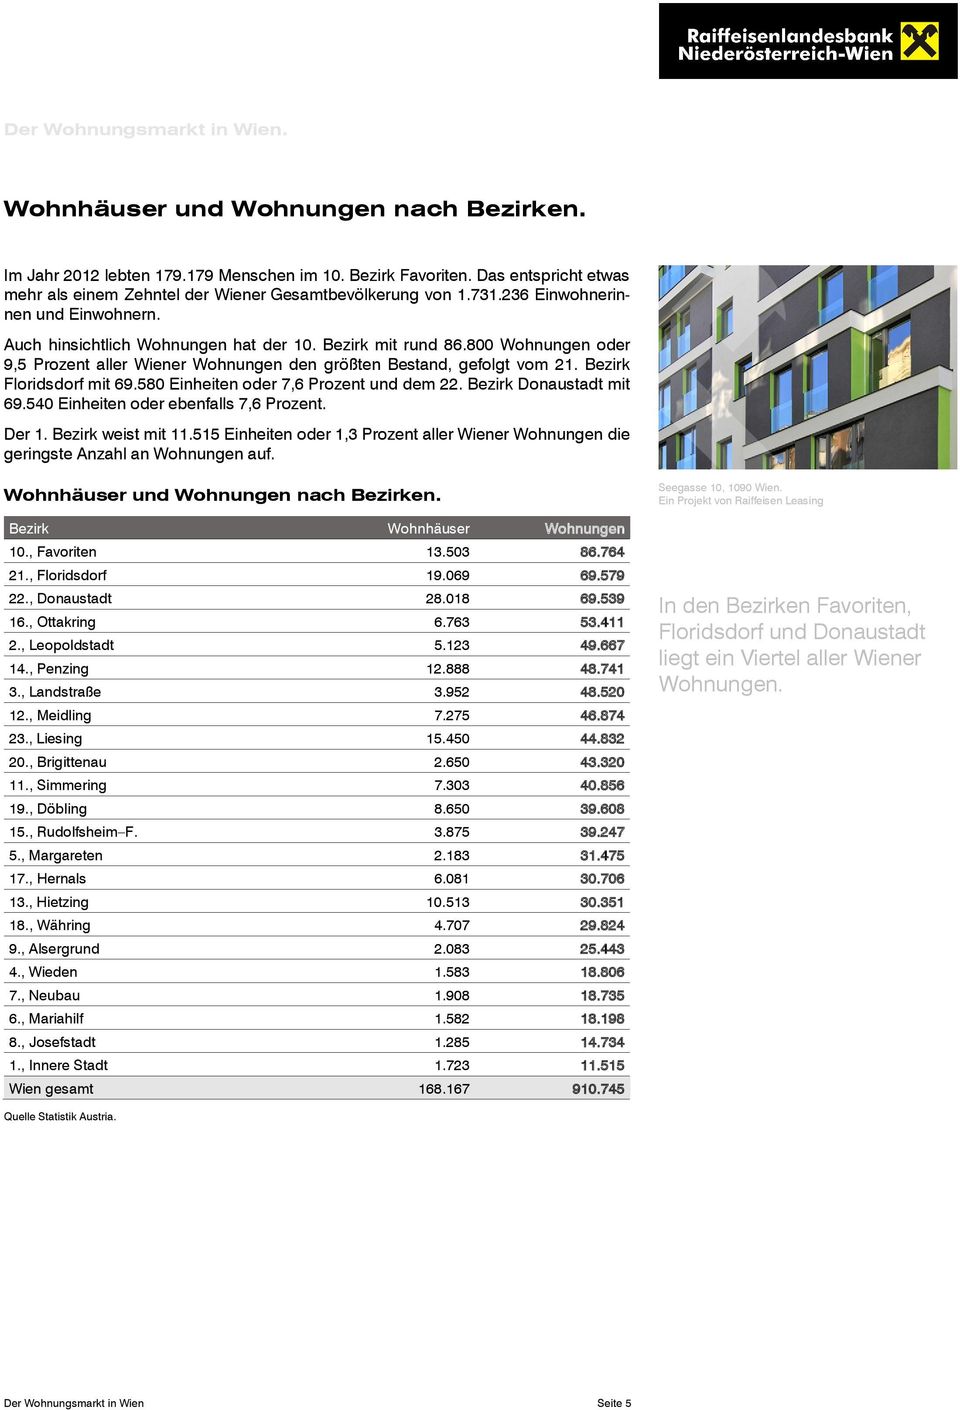 800 Wohnungen oder 9,5 Prozent aller Wiener Wohnungen den größten Bestand, gefolgt vom 21. Bezirk Floridsdorf mit 69.580 Einheiten oder 7,6 Prozent und dem 22. Bezirk Donaustadt mit 69.